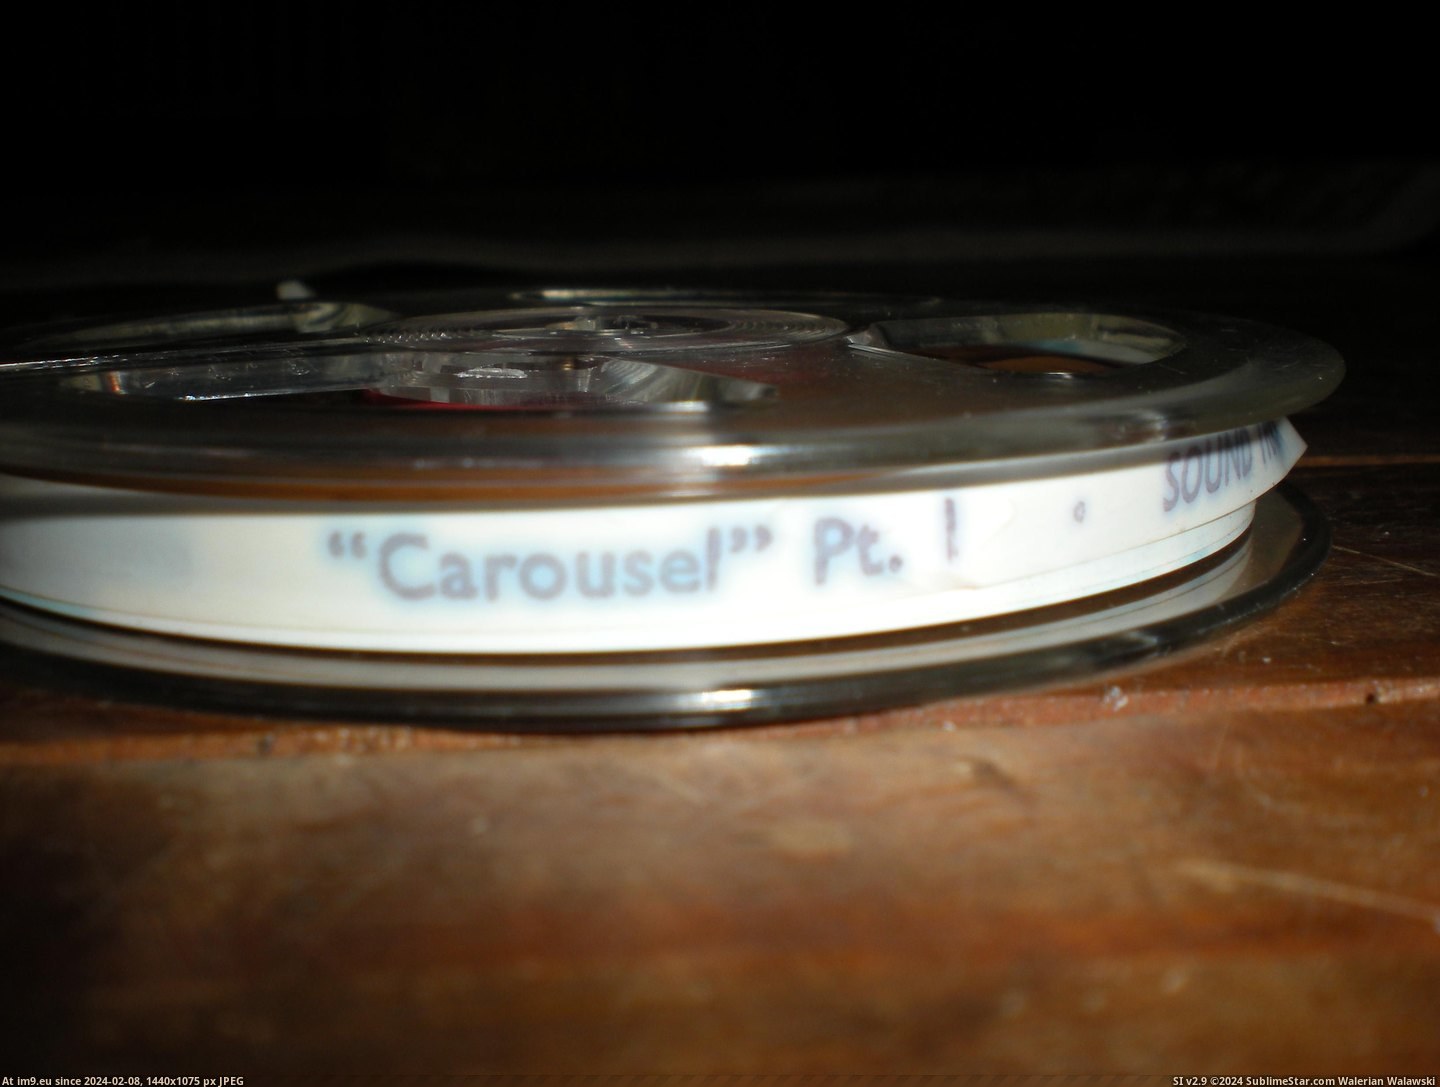  #Carousel  Carousel 4 Pic. (Obraz z album new 1))